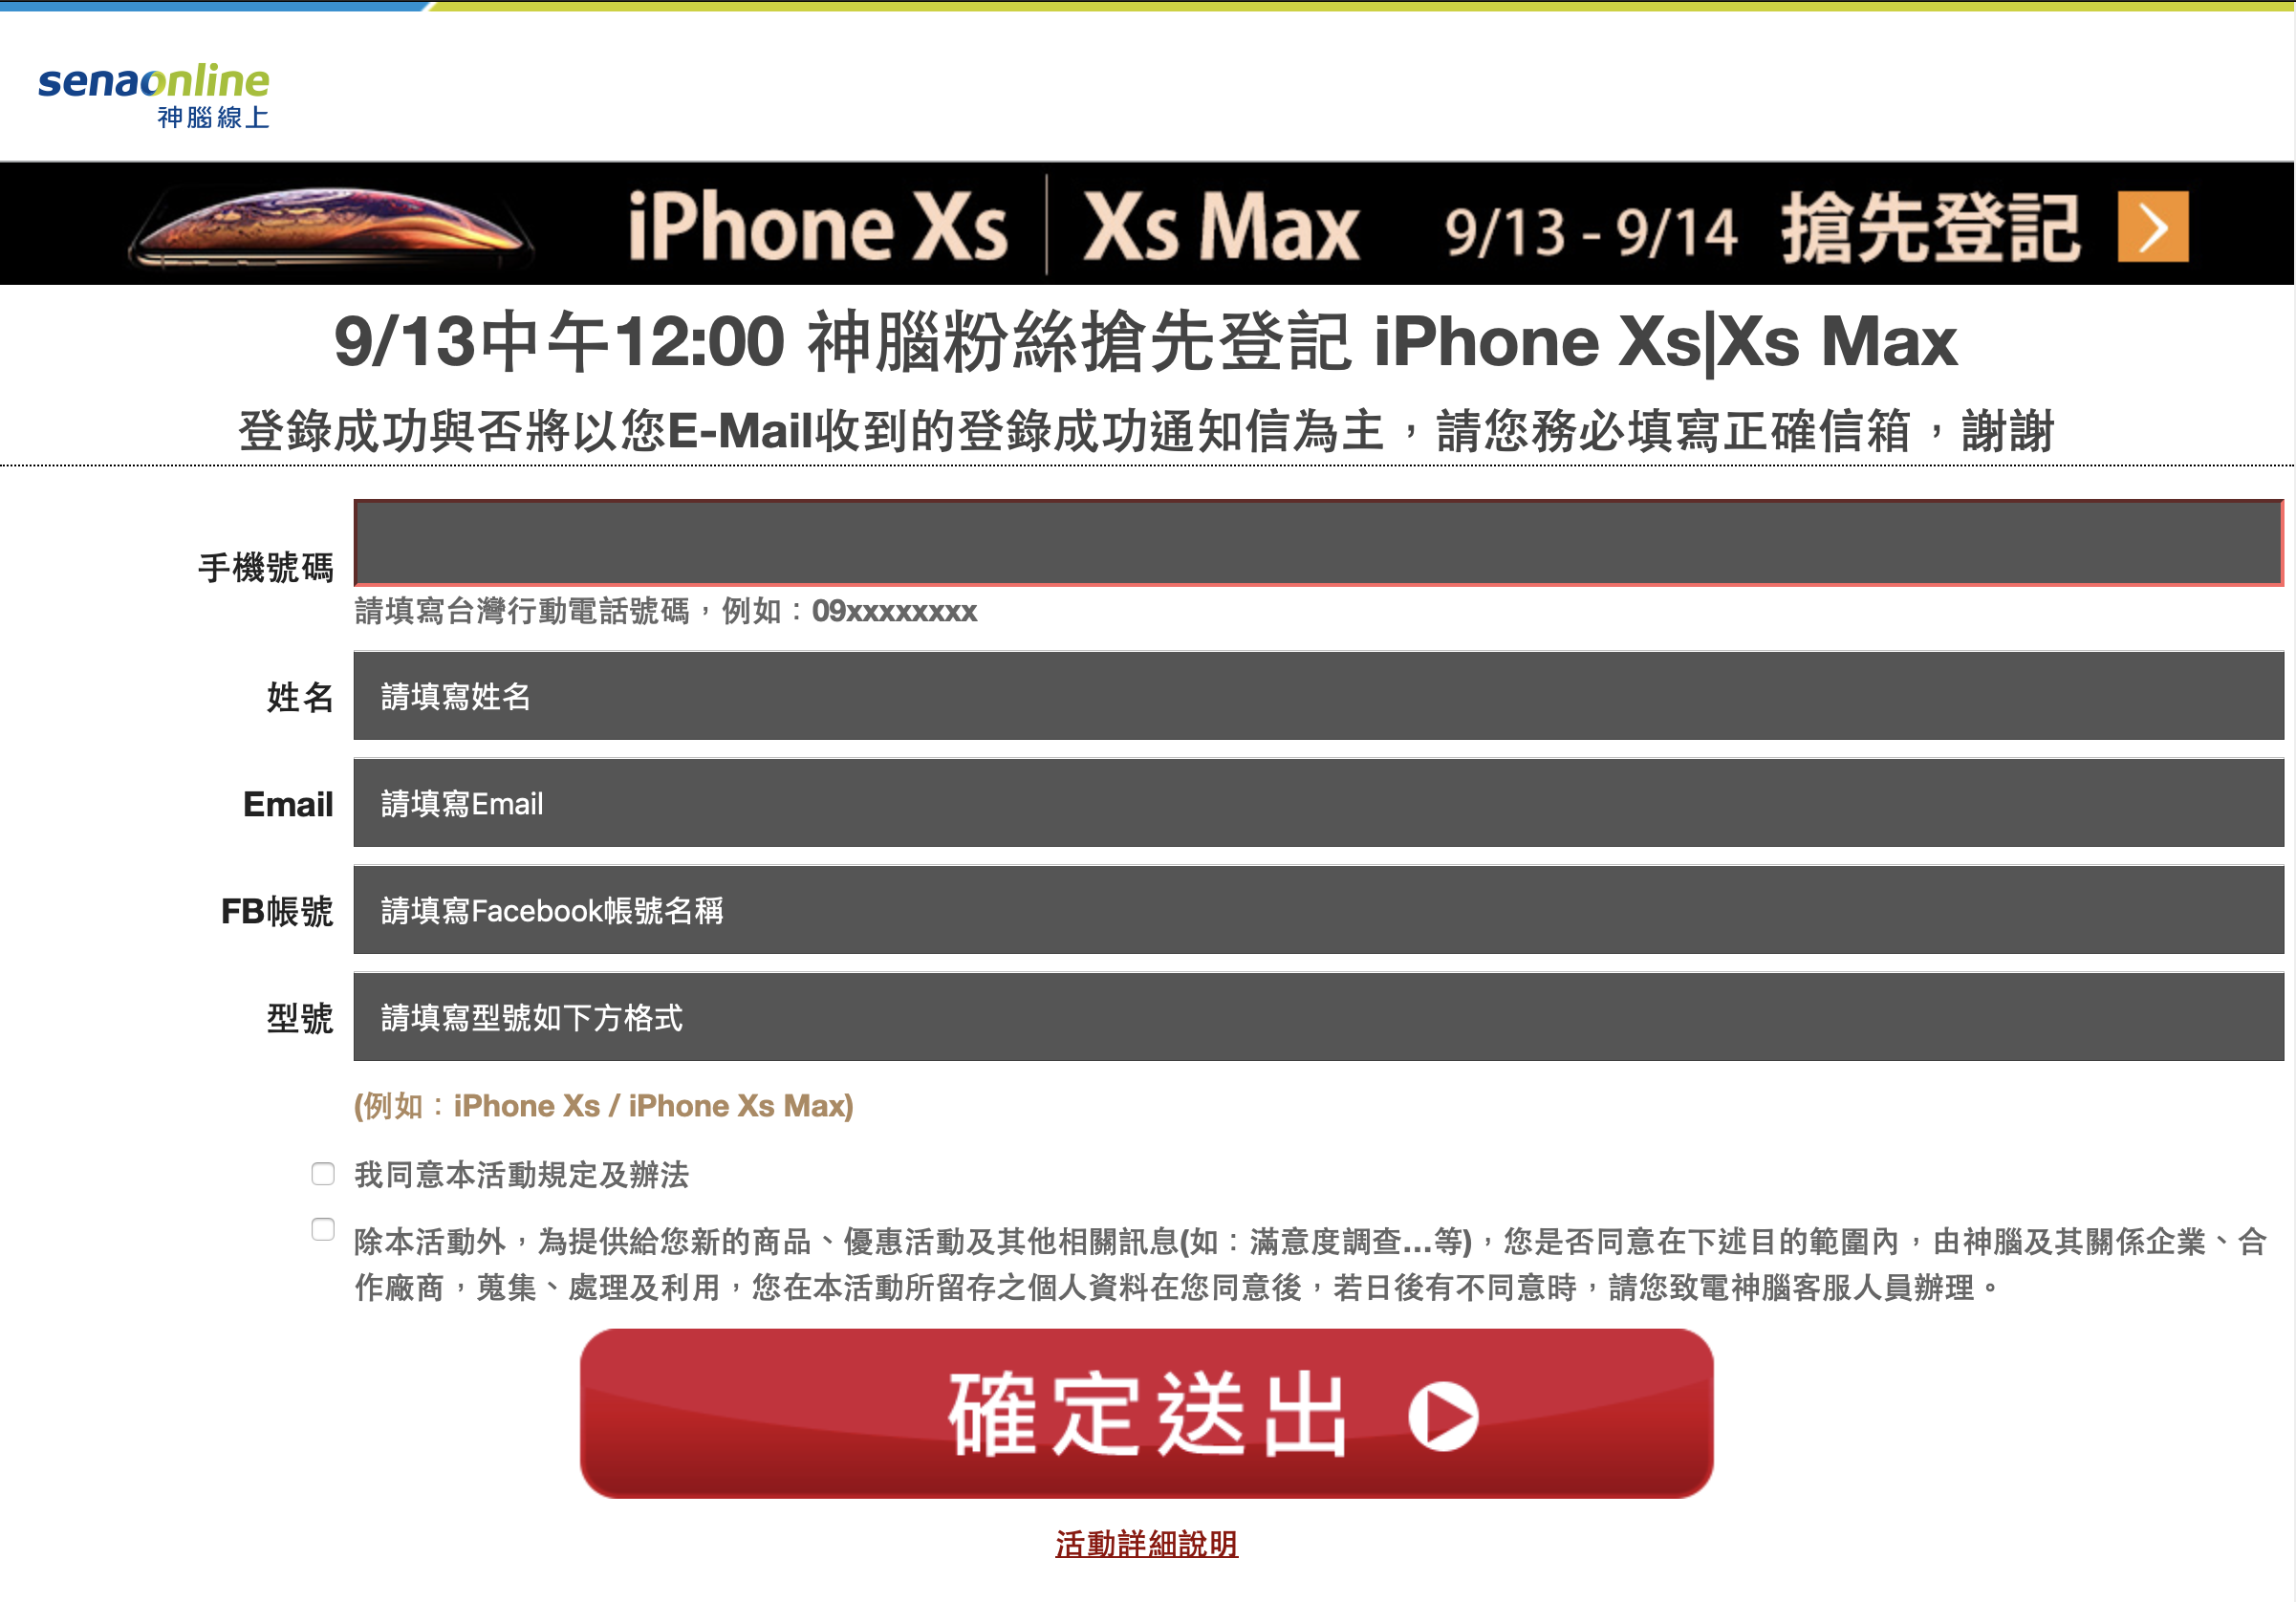 iPhone XS 預購、中華電信